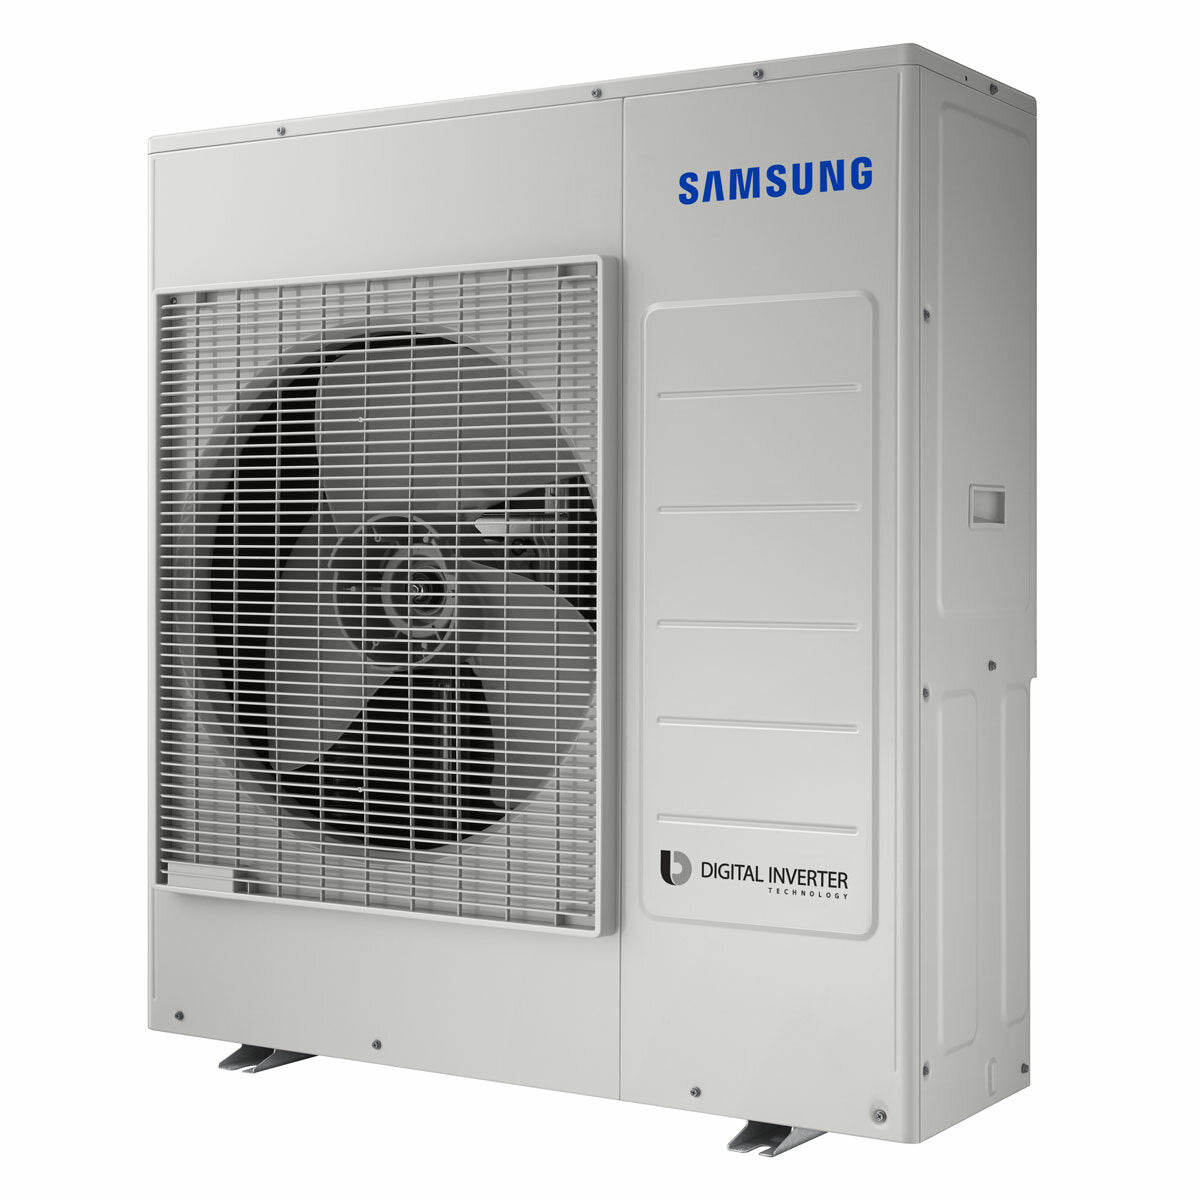 Samsung windfree Klimaanlage Avant Penta Split 7000 + 7000 + 7000 + 9000 + 9000 BTU Inverter A++ WLAN Außengerät 10,0 kW